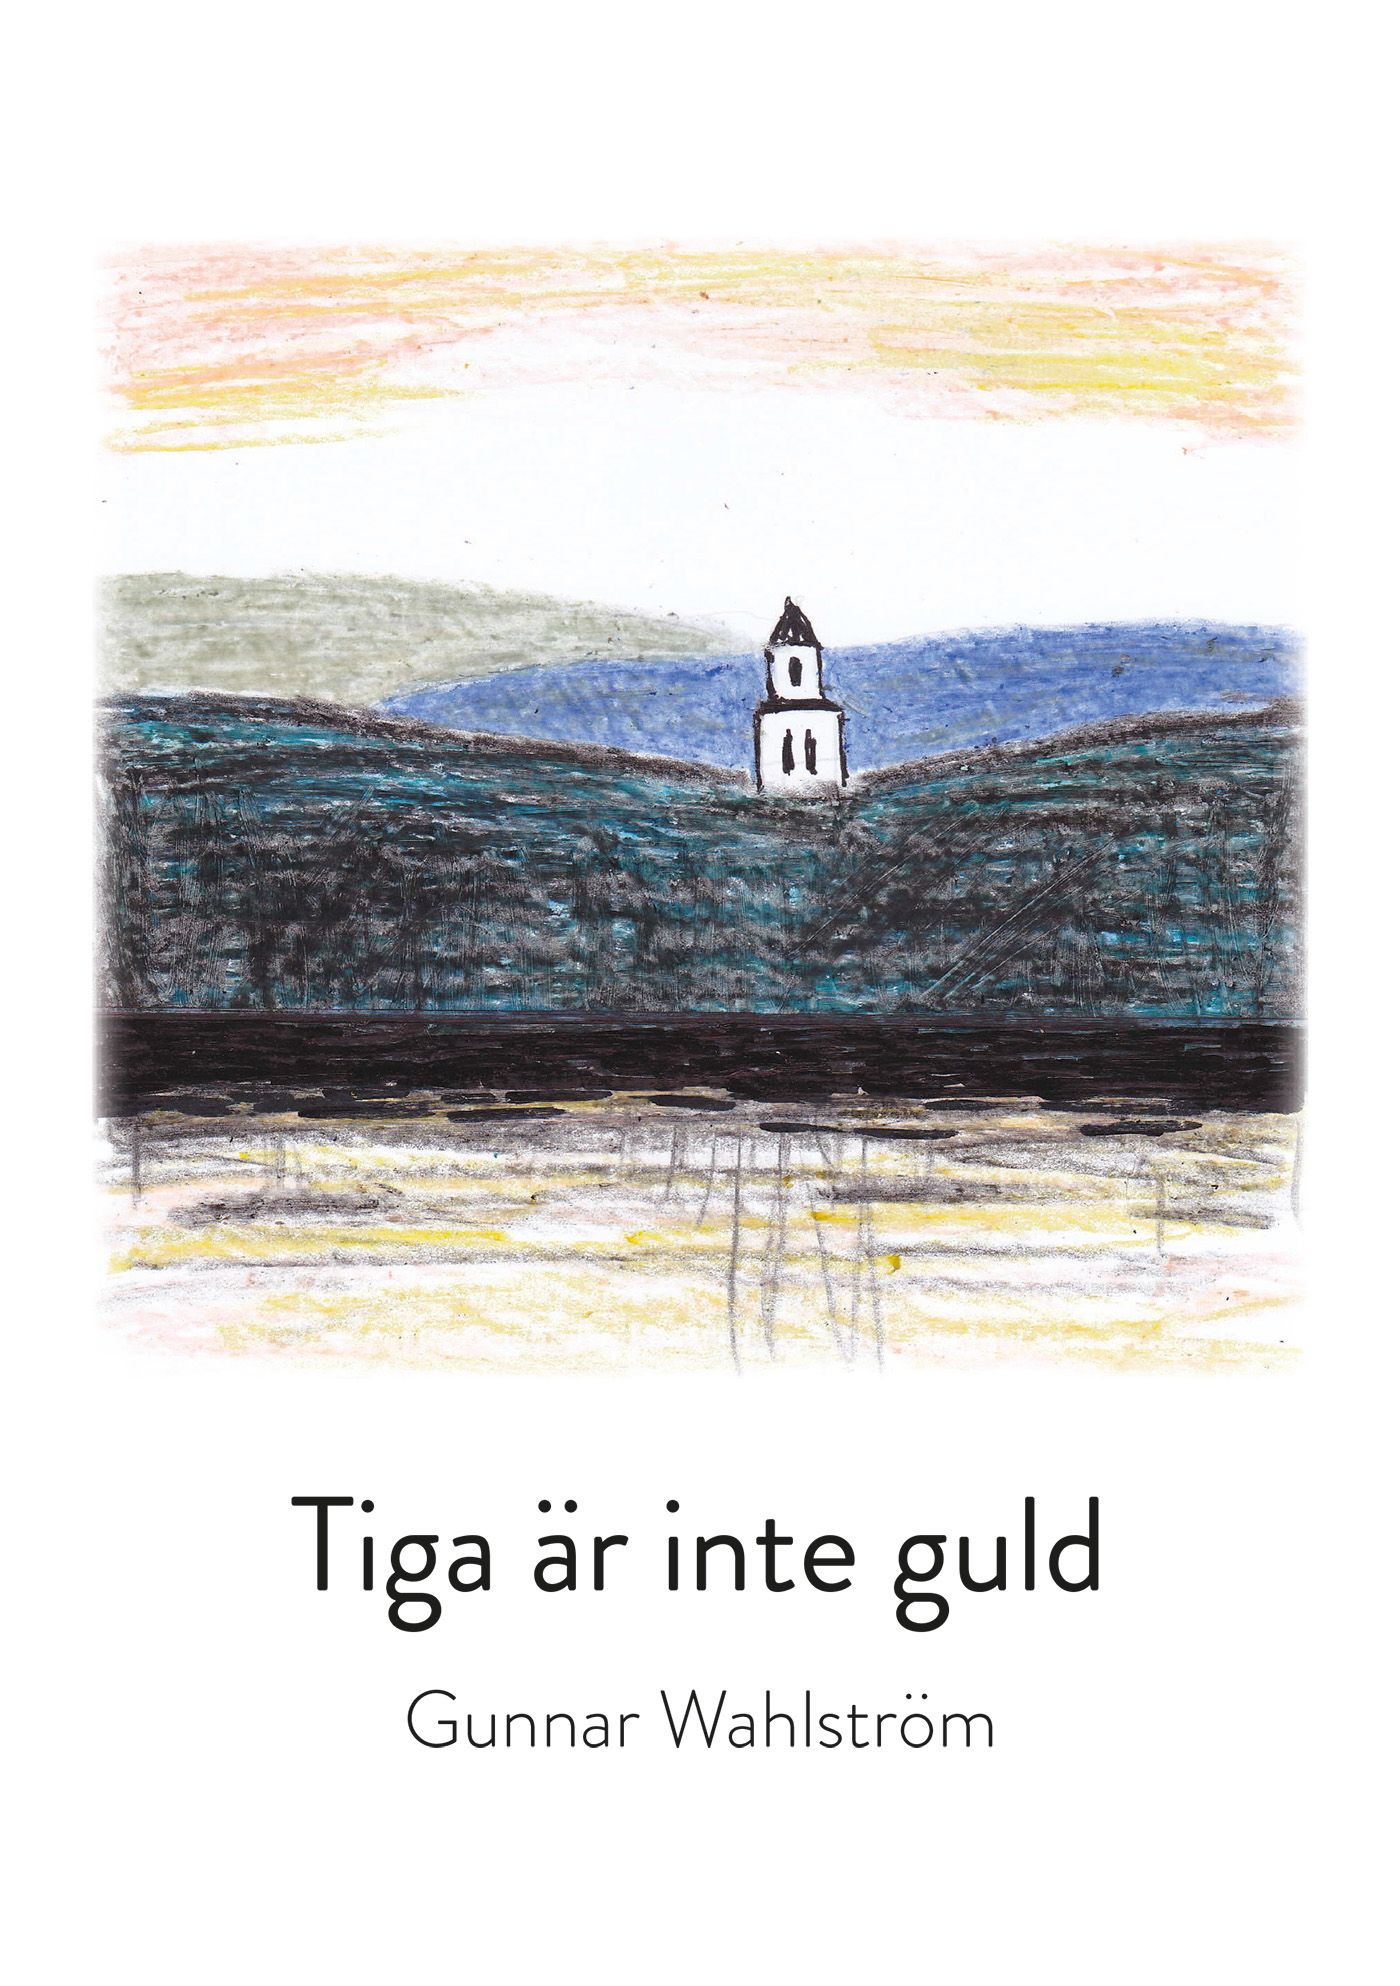 Tiga är inte guld, eBook by Gunnar Wahlström